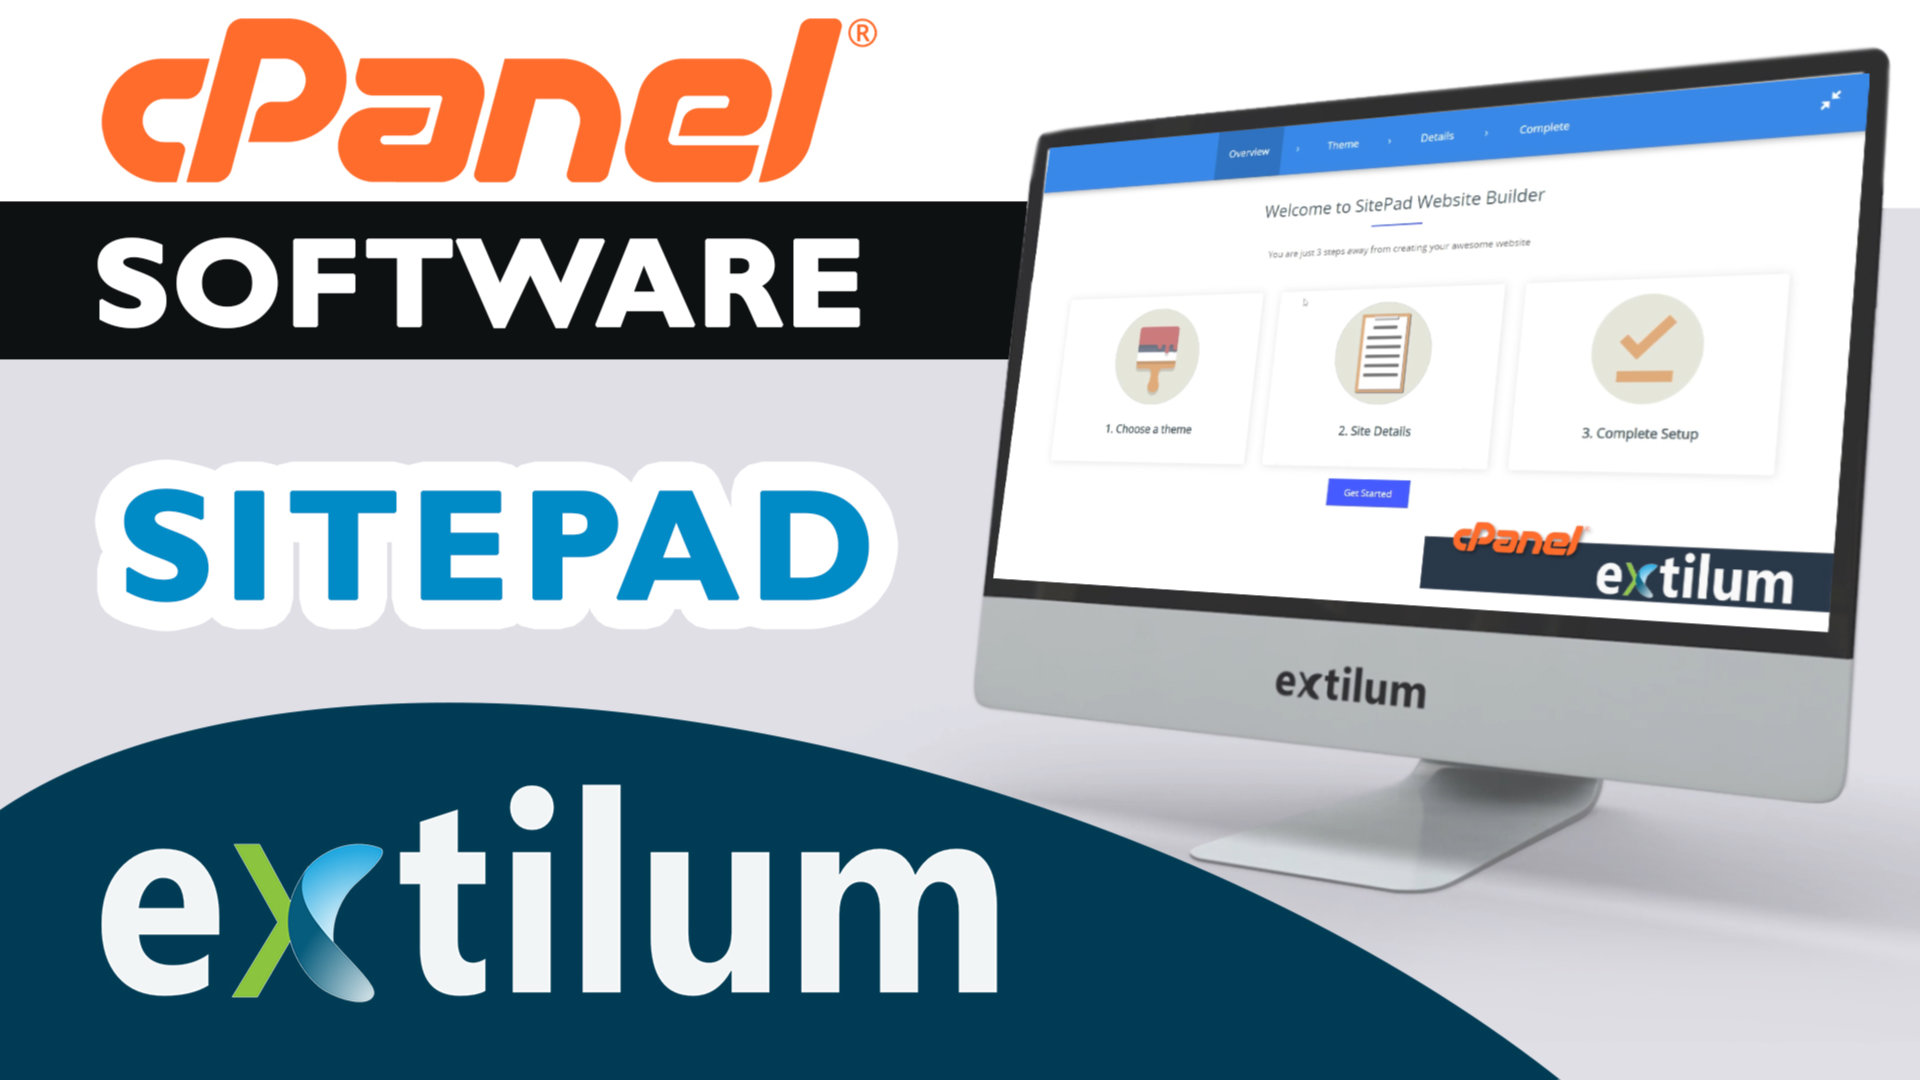 Extilum cpanel - software - sitepad